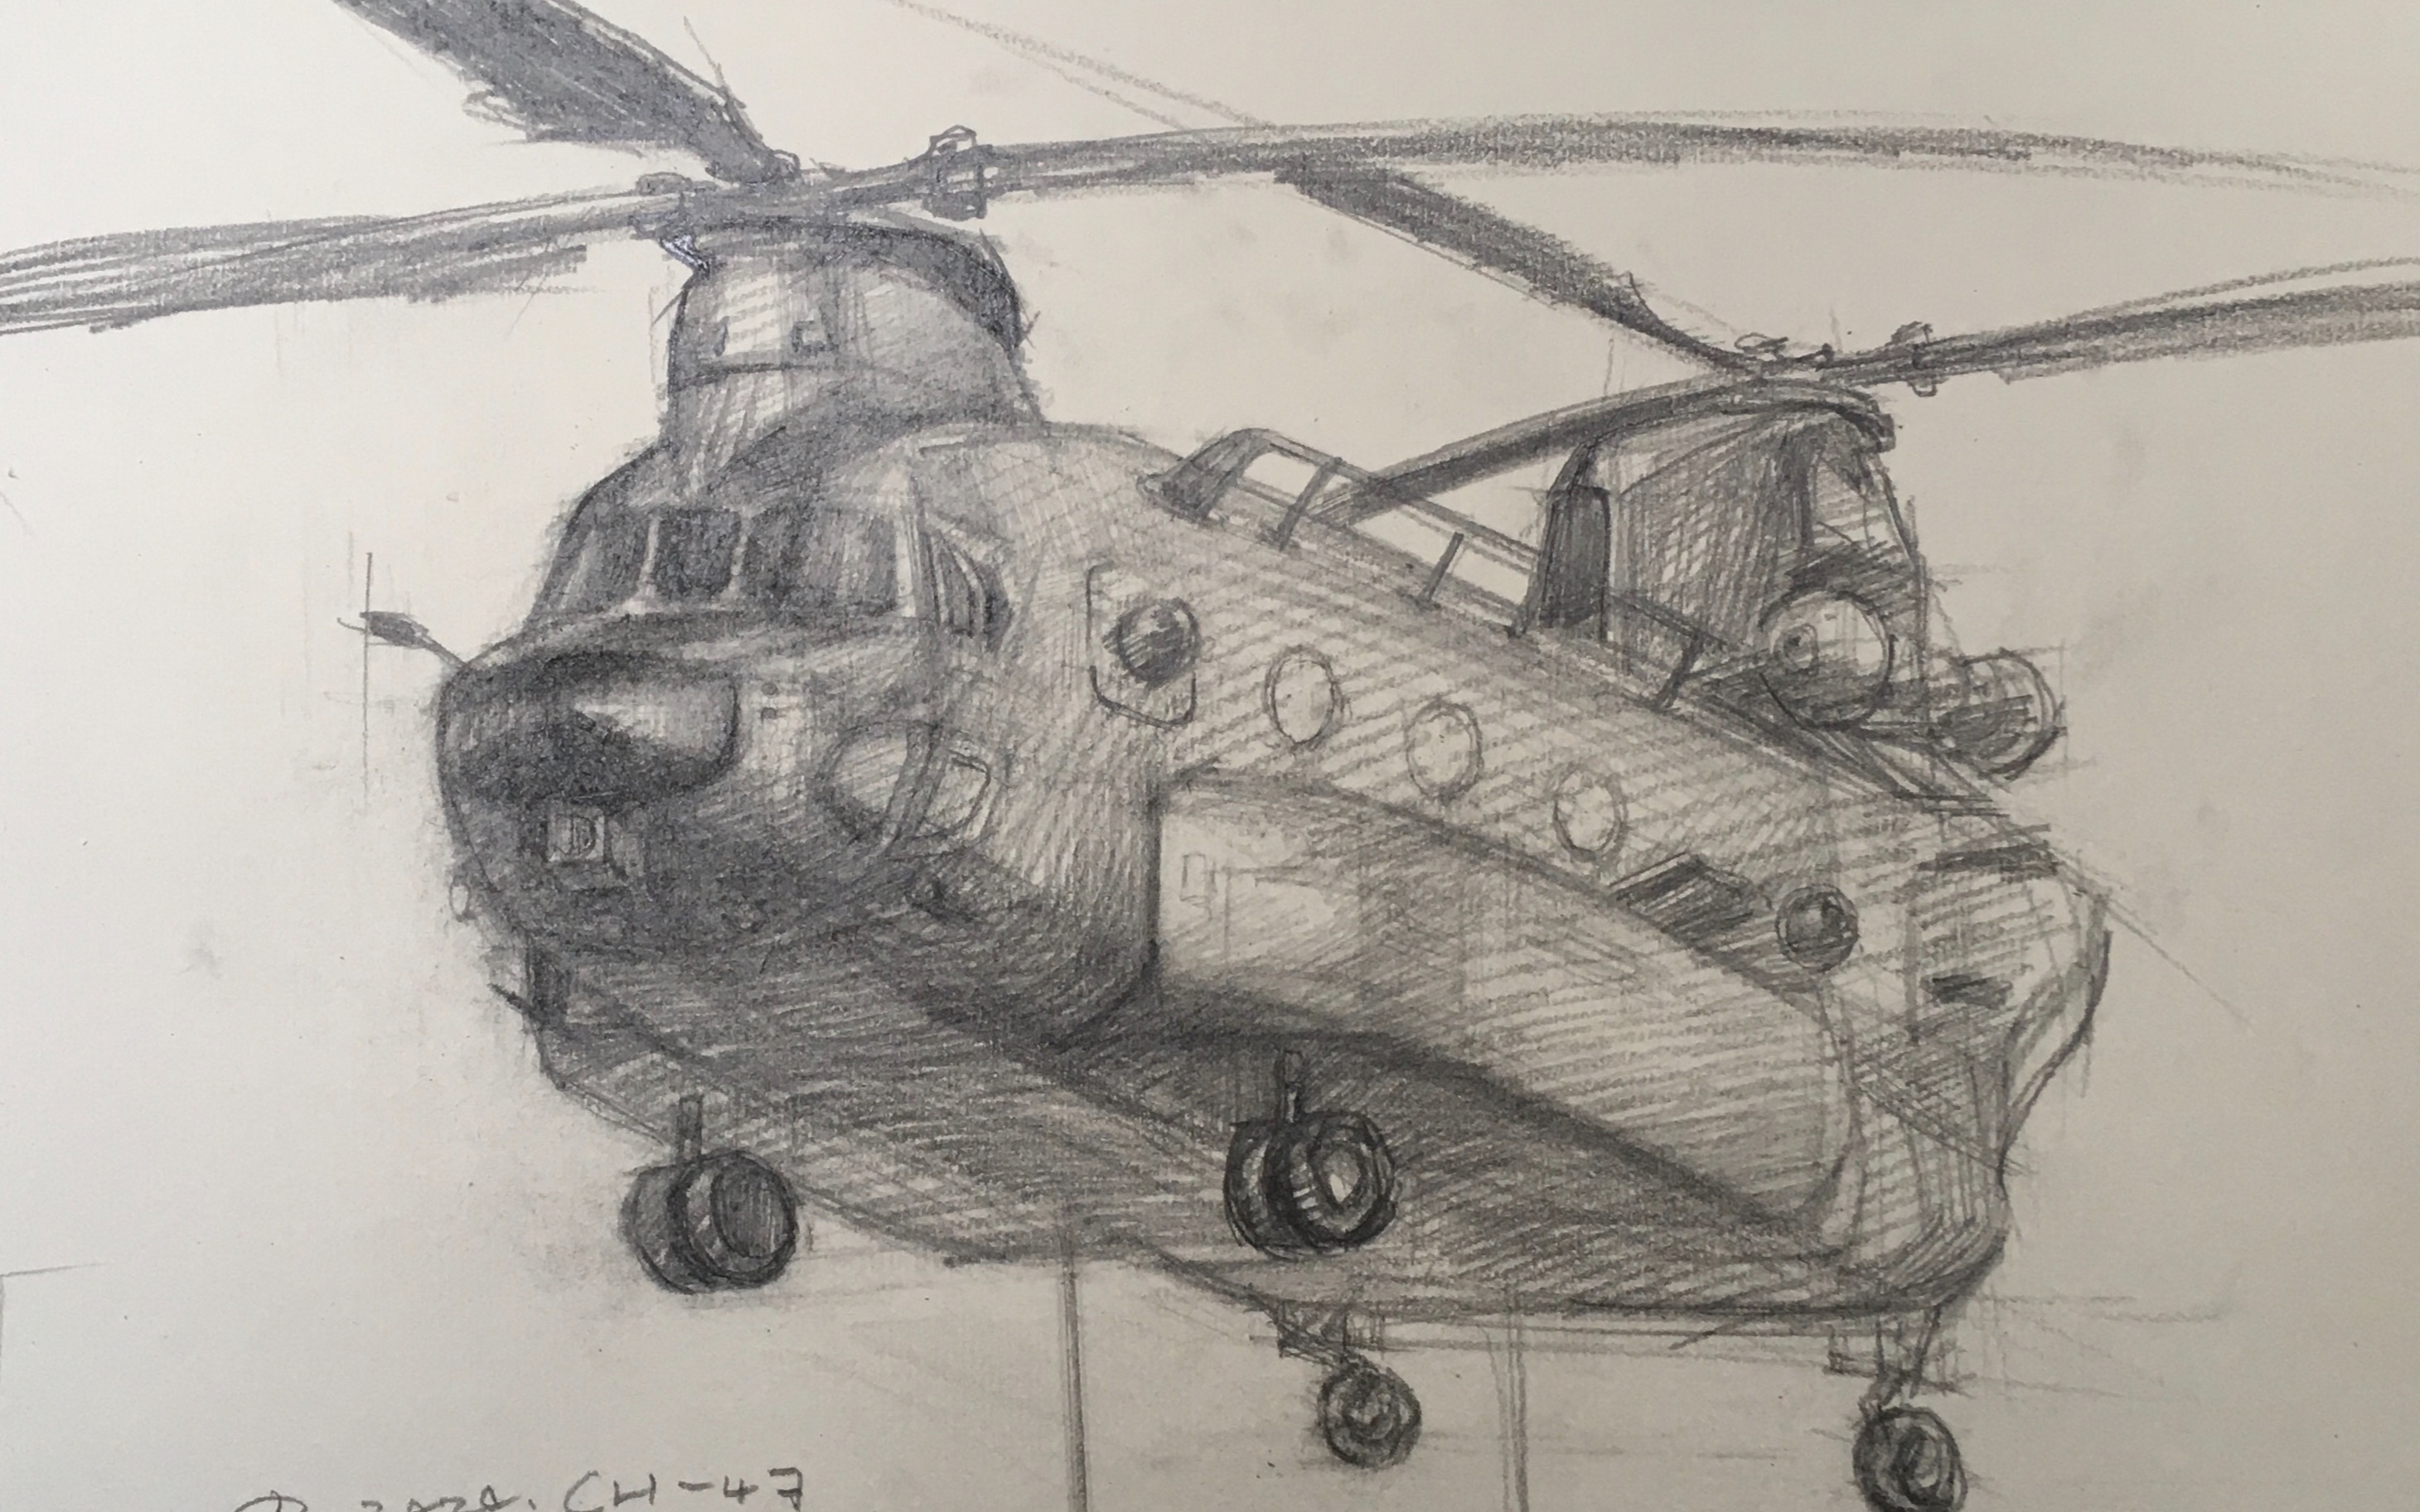 素描直升机怎么画图片